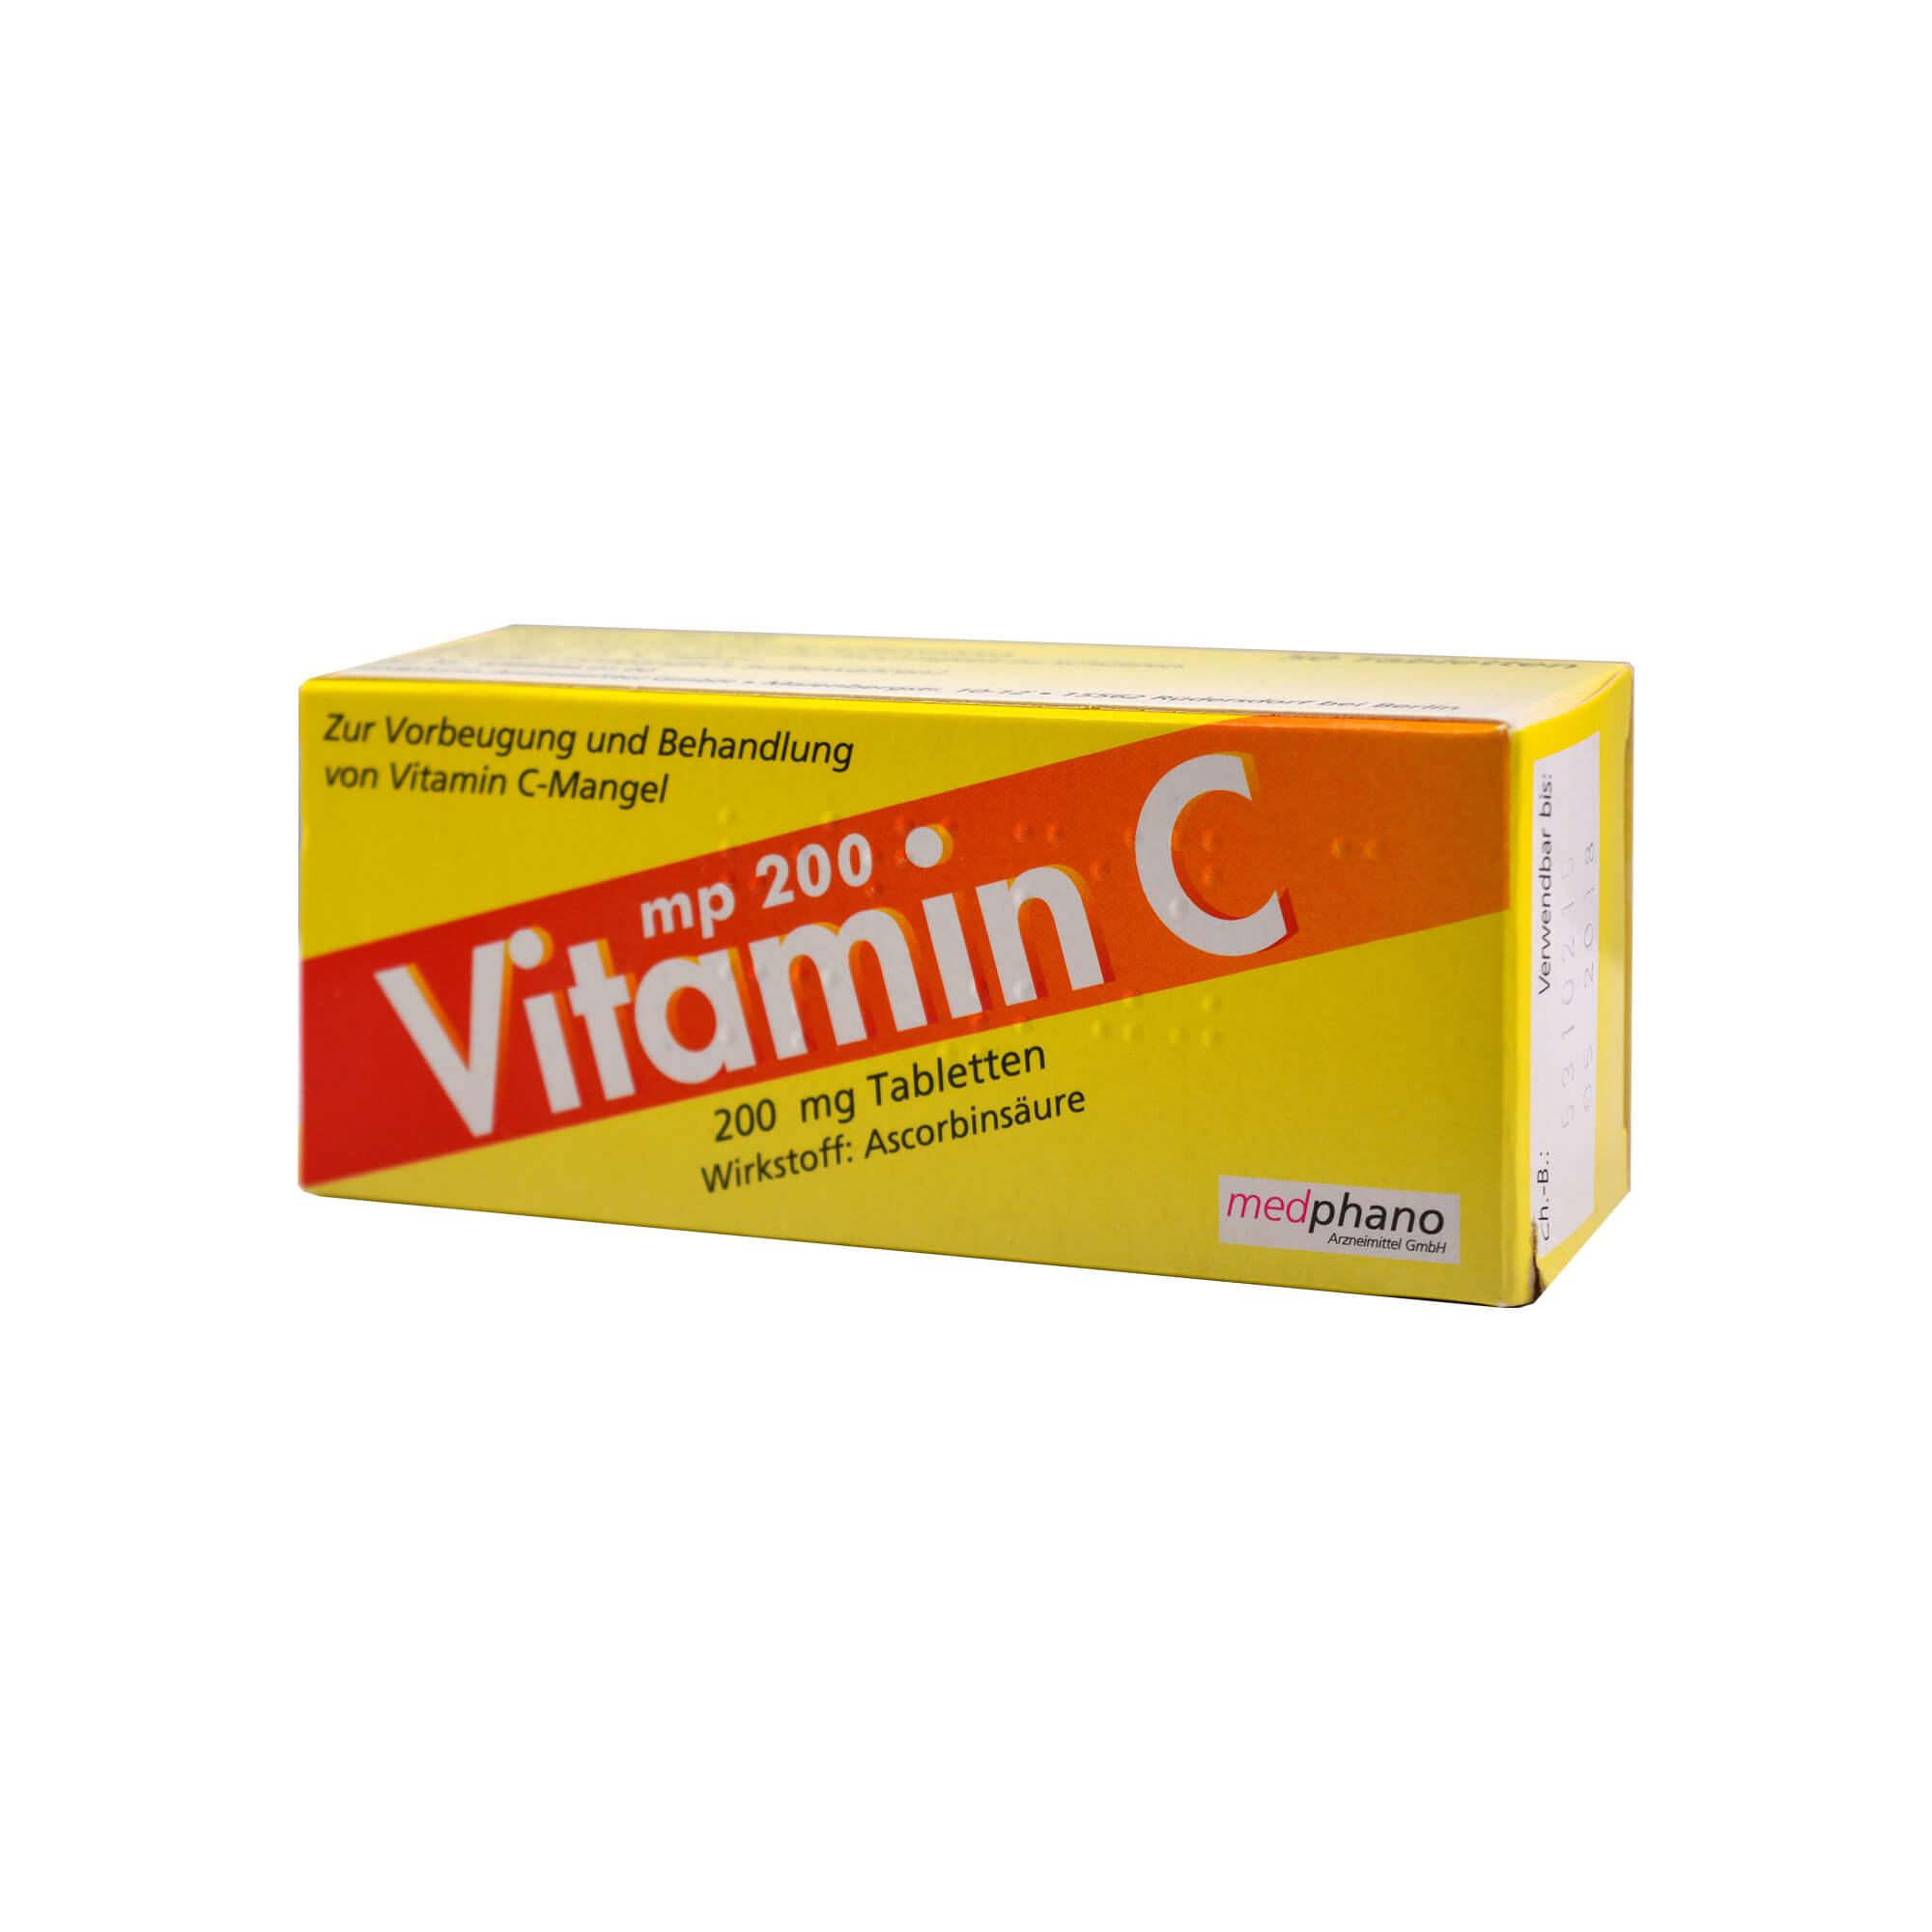 Zur Vorbeugung eines Vitamin-C-Mangels, wenn die ausreichende Zufuhr durch die Ernährung nicht gesichert ist und zur Behandlung von Vitamin-C-Mangel-Krankheiten.